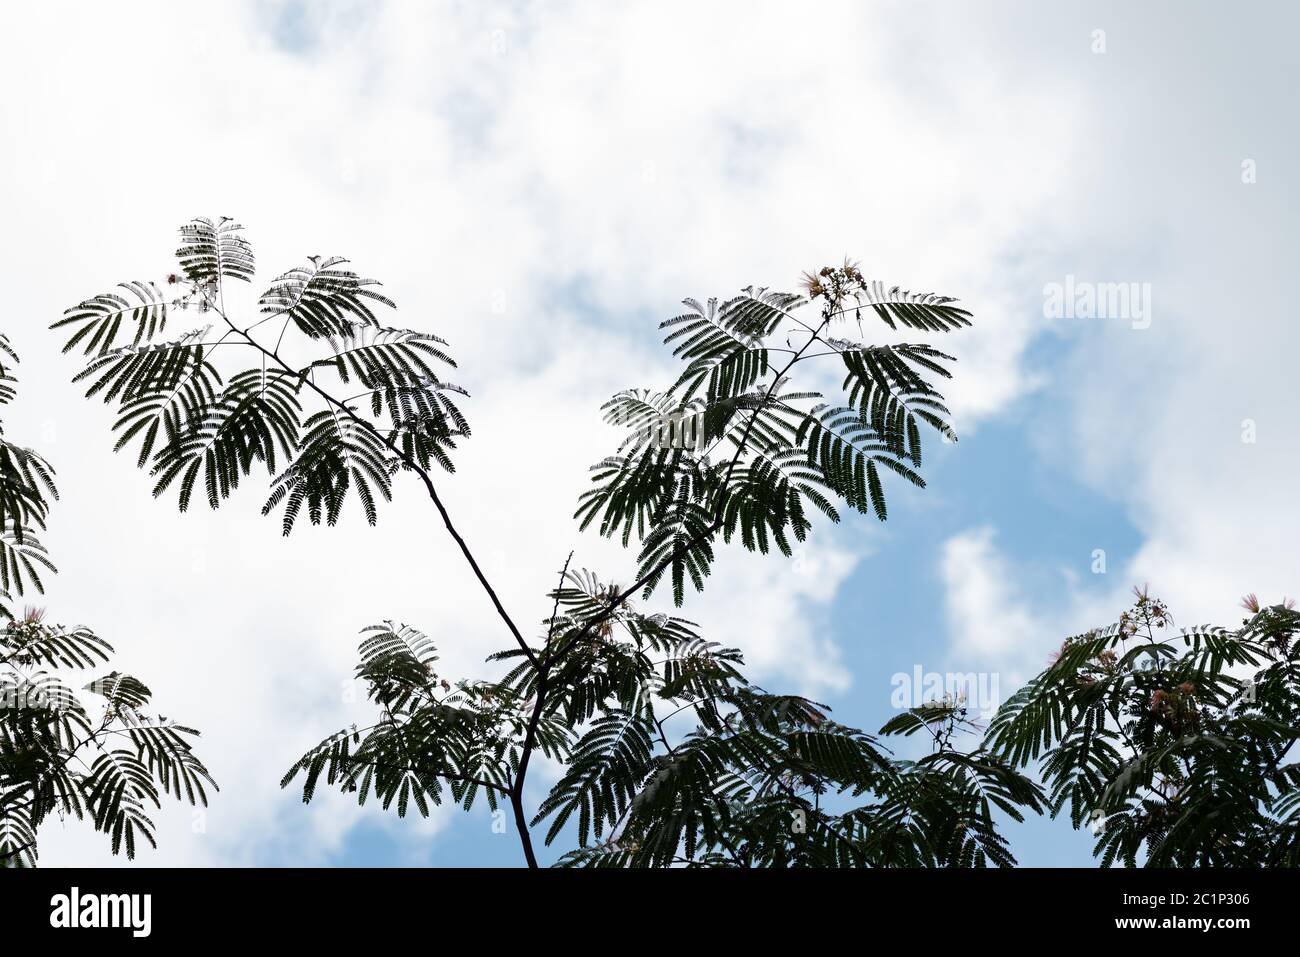 Mimosa Baum auch Seidenbaum gegen einen blauen Himmel und wispy weißen Wolken genannt. Schnell wachsender Zierbaum mit puffball rosa aromatischen Blüten. Stockfoto